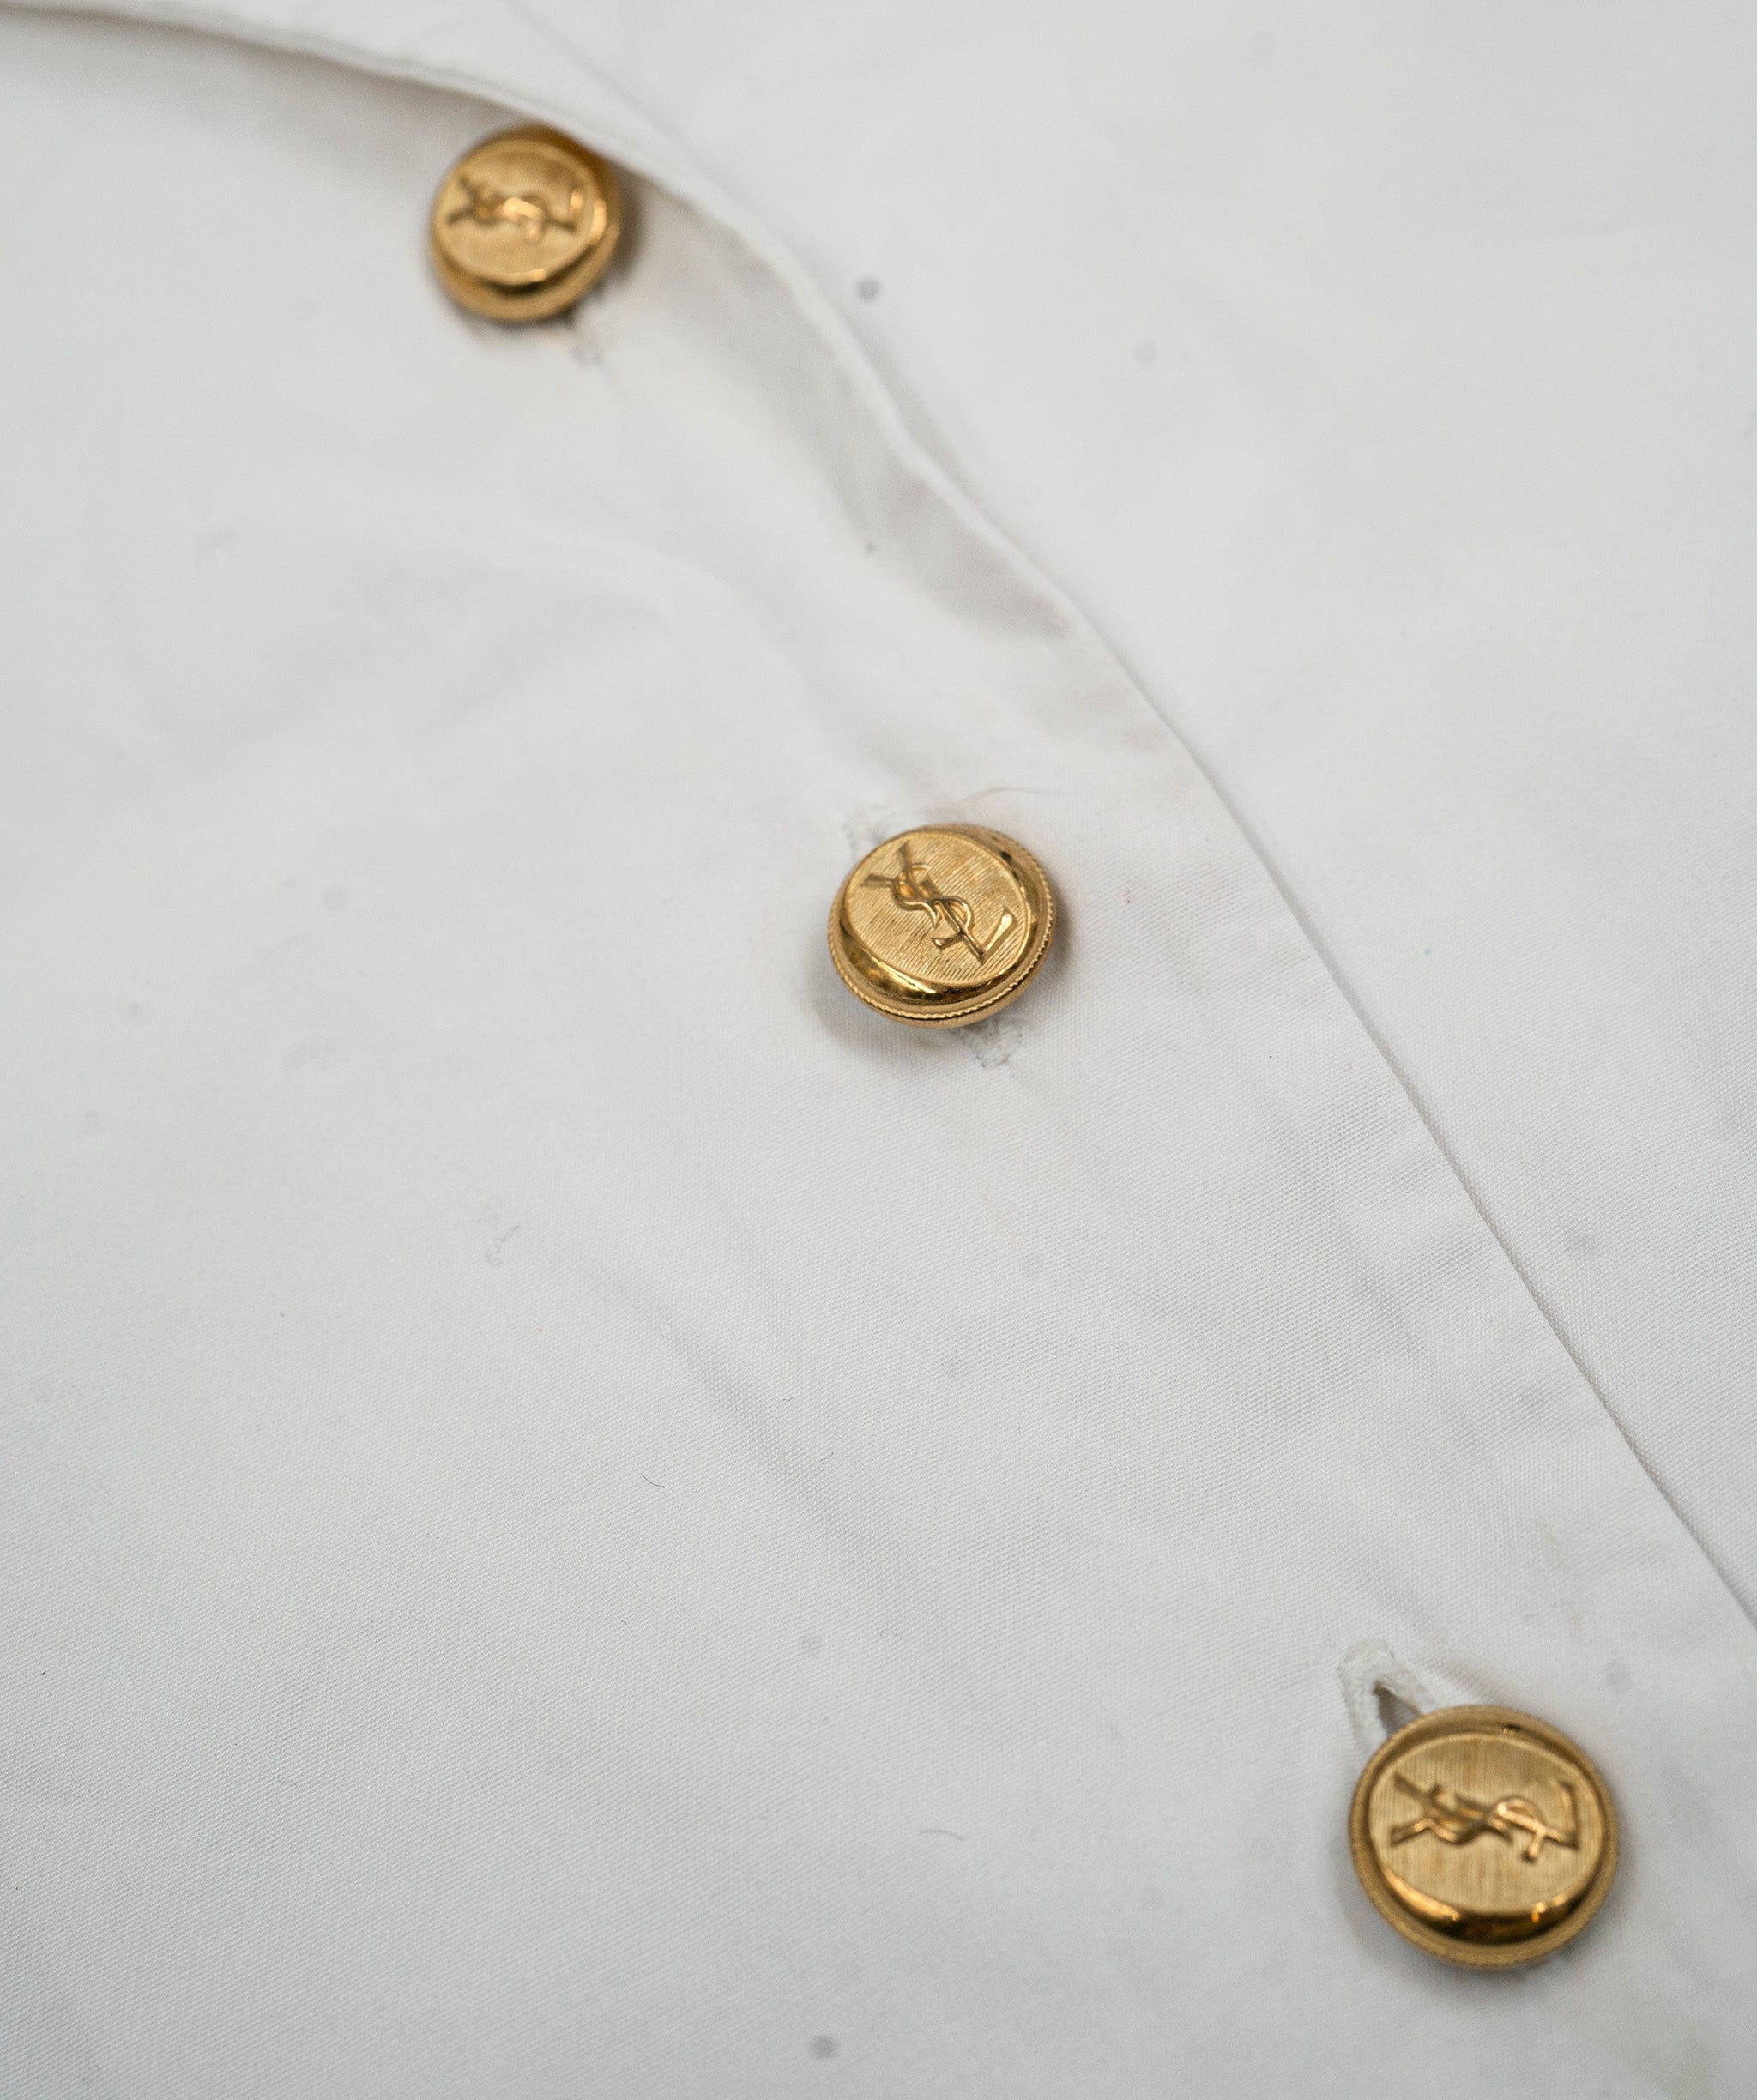 Yves Saint Laurent Yves Saint Laurent Vintage Button Shirt, Cotton, 8, 2* ASL5073